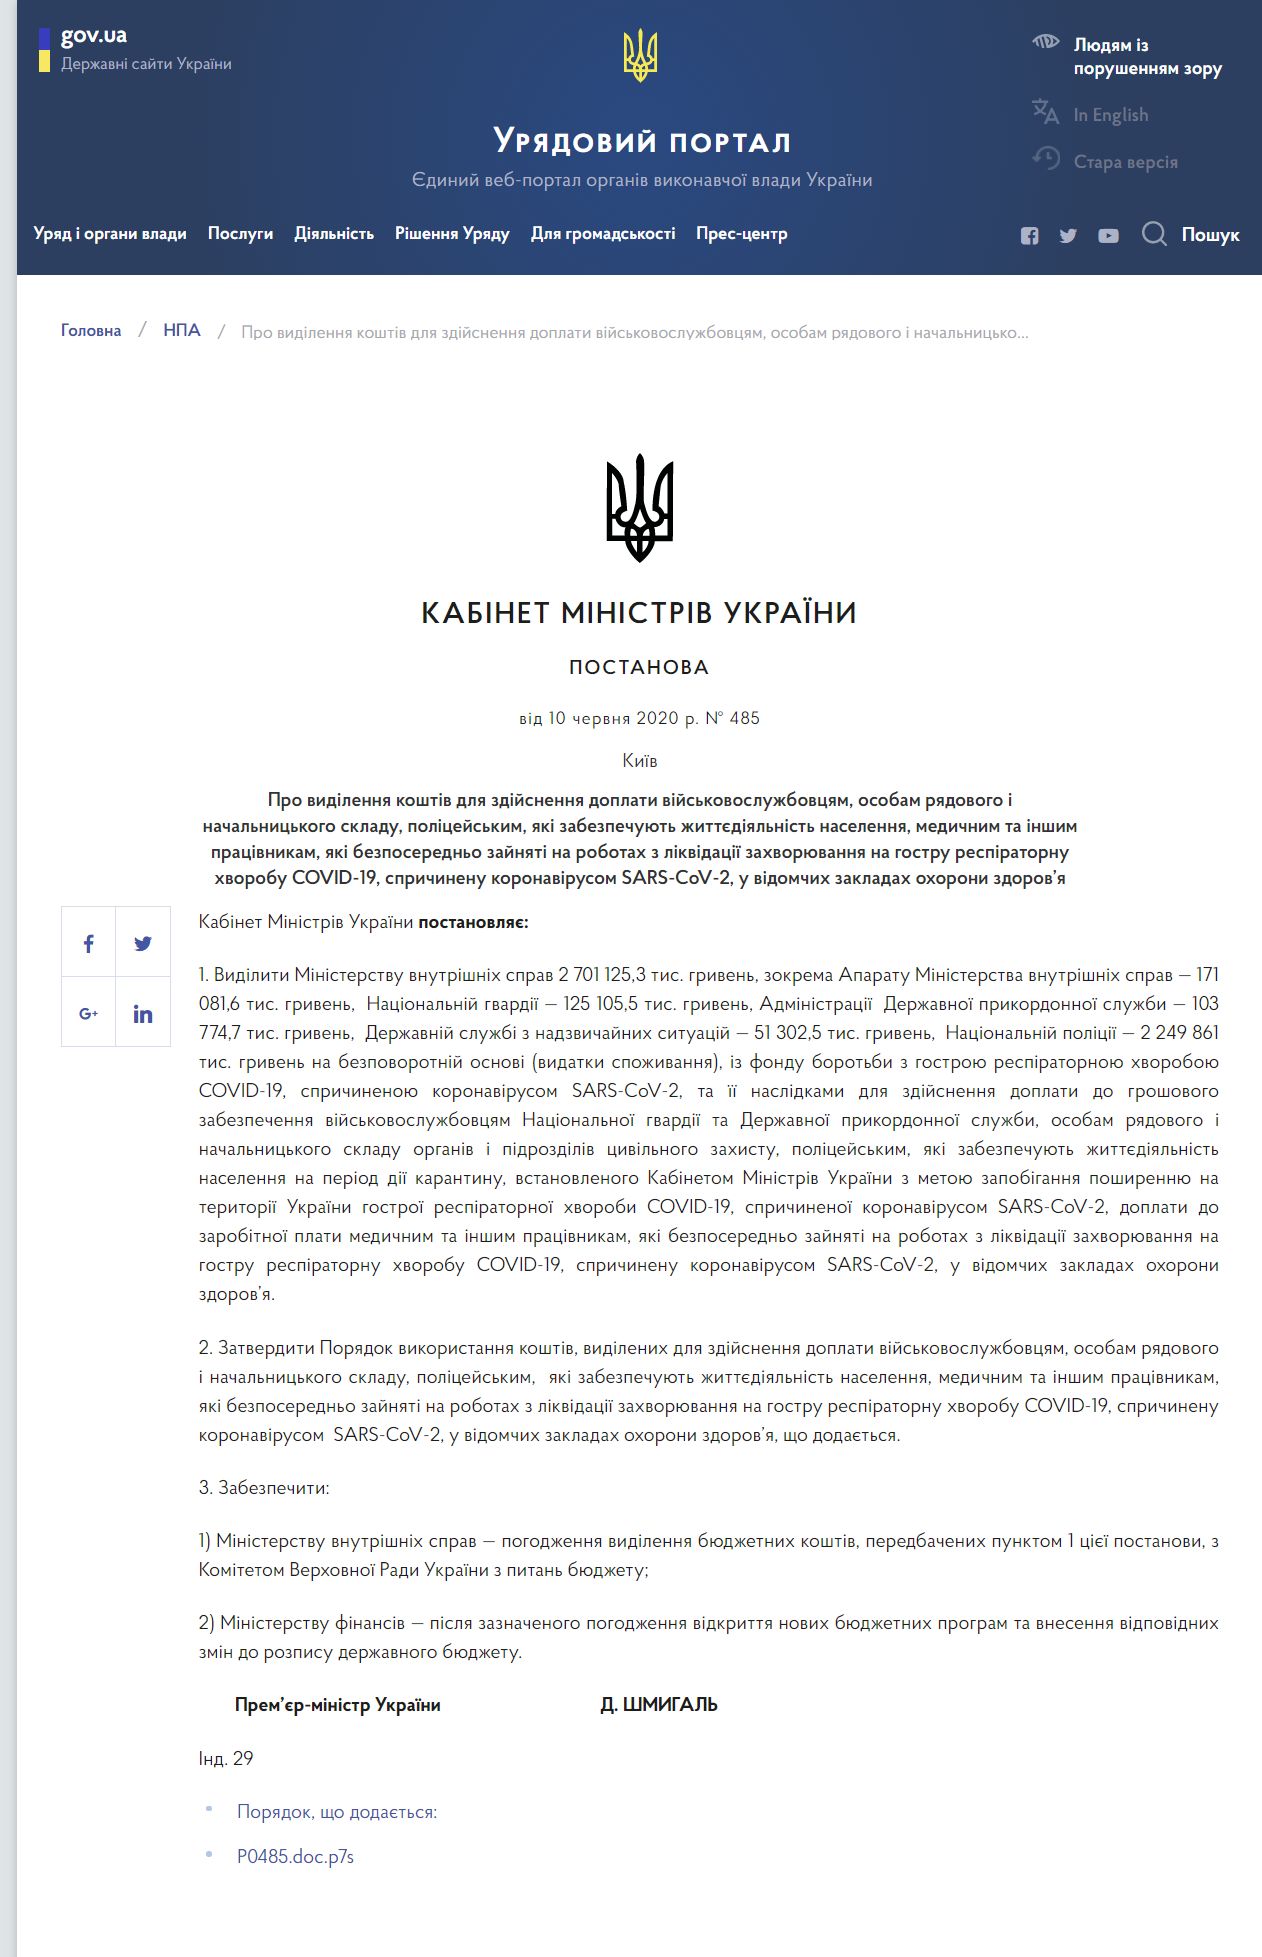 https://www.kmu.gov.ua/npas/pro-vidilennya-koshtiv-dlya-zdijsnenn-a485